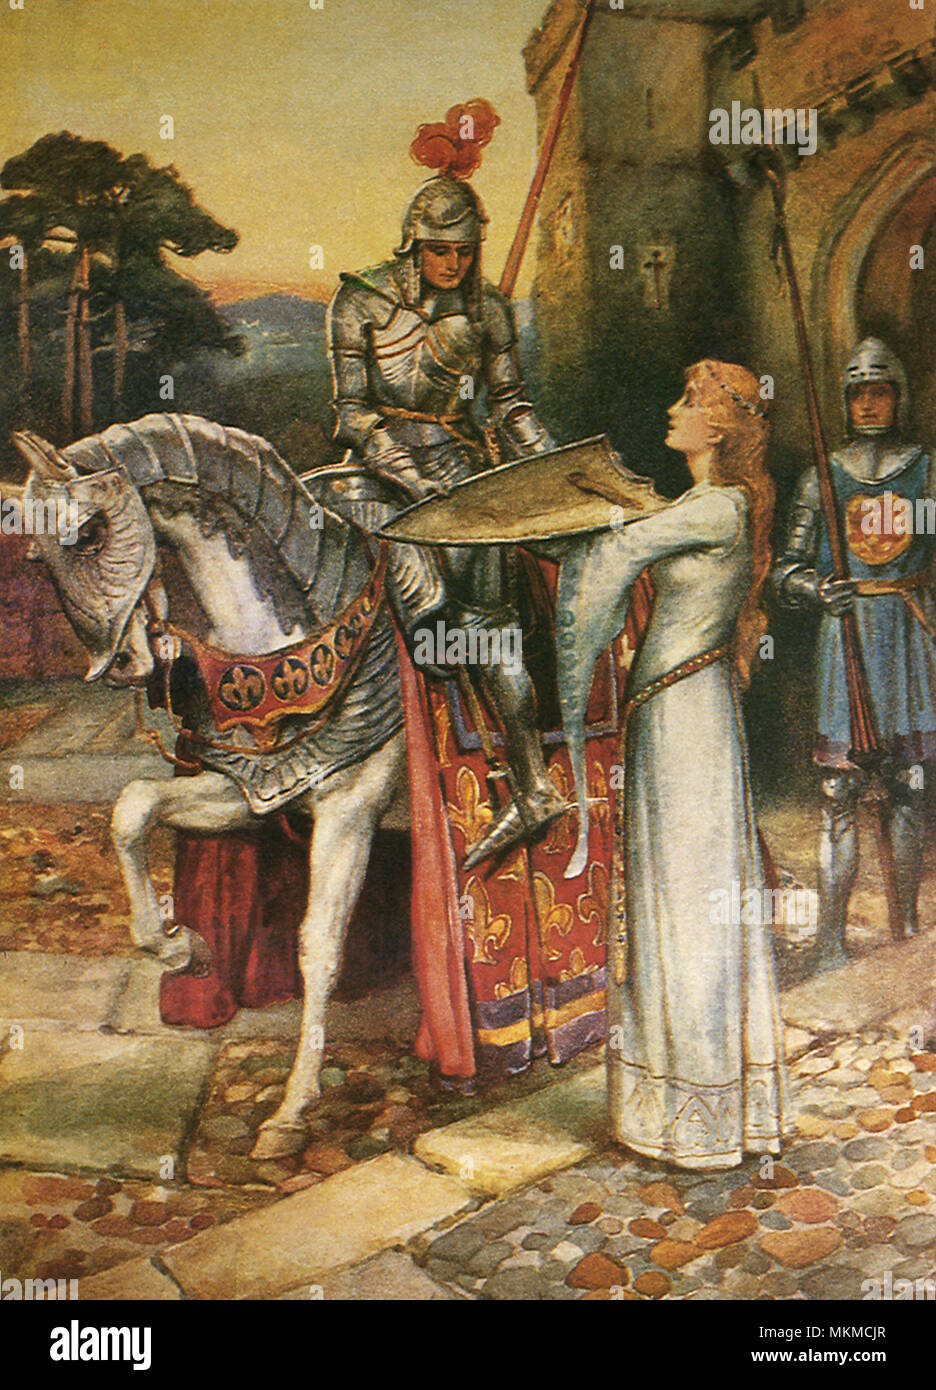 Рыцарь средневековье Ланселот